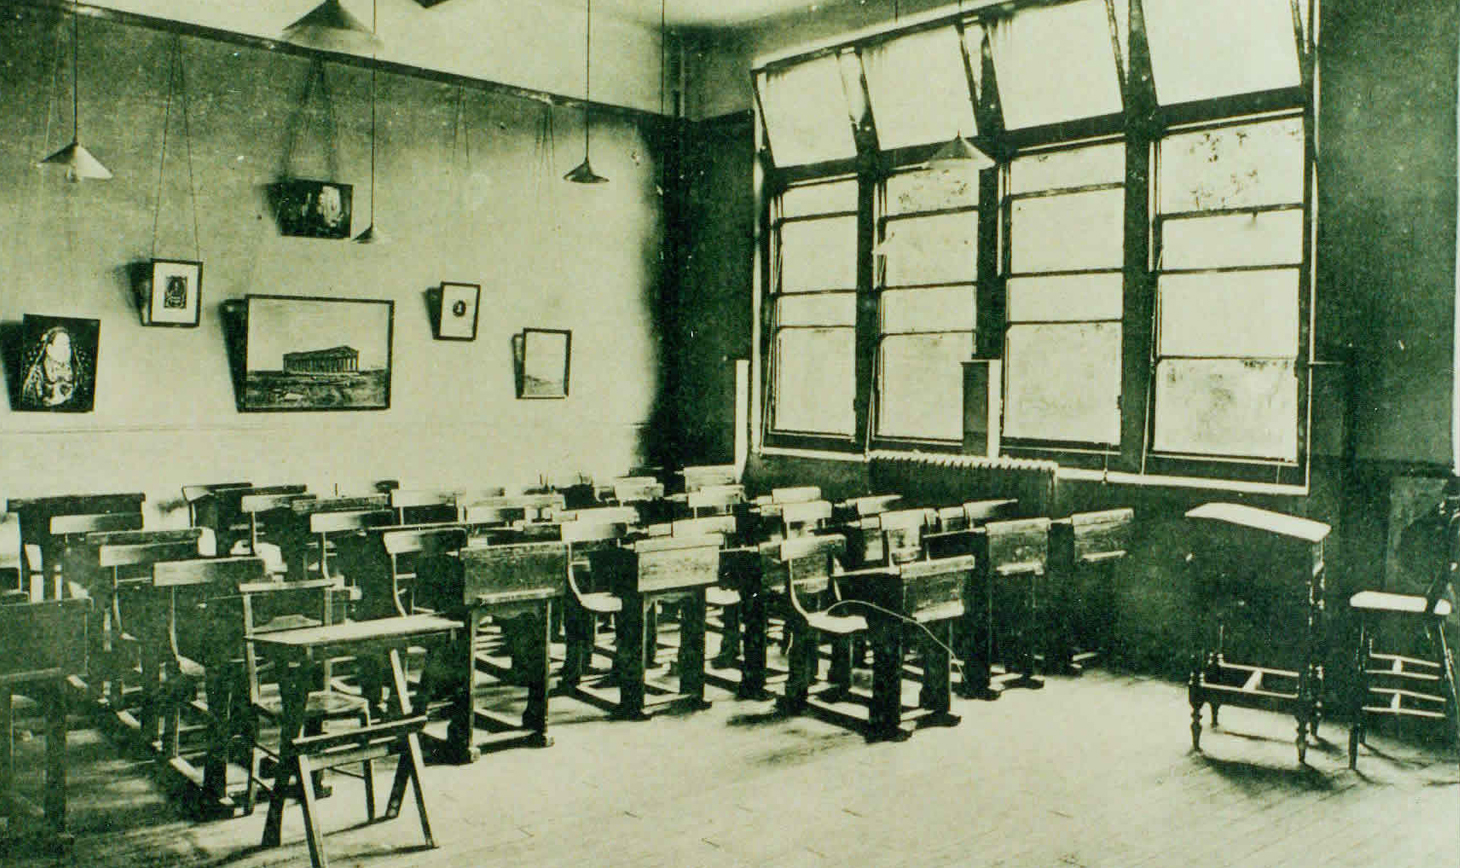 Reigate Grammar School classroom from 1906